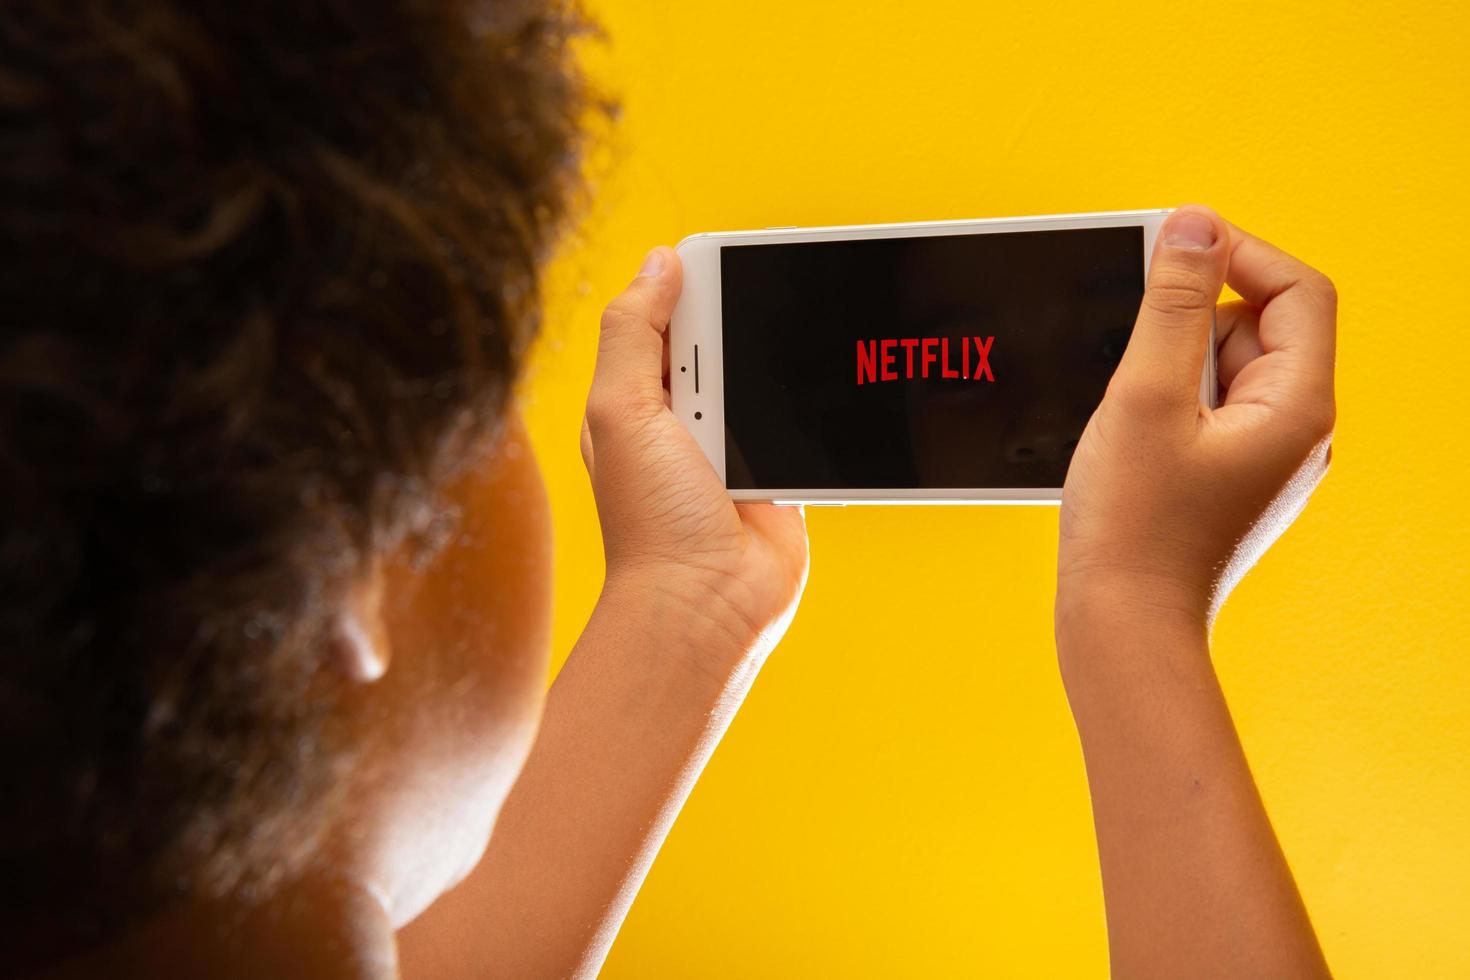 ribeirao preto, sao paulo brazilië circa november 2019 opent netflix-toepassingspictogram op iphone 8 plus jongen rustend met haar mobiele telefoon in haar handen en het netflix-logo op het scherm. foto